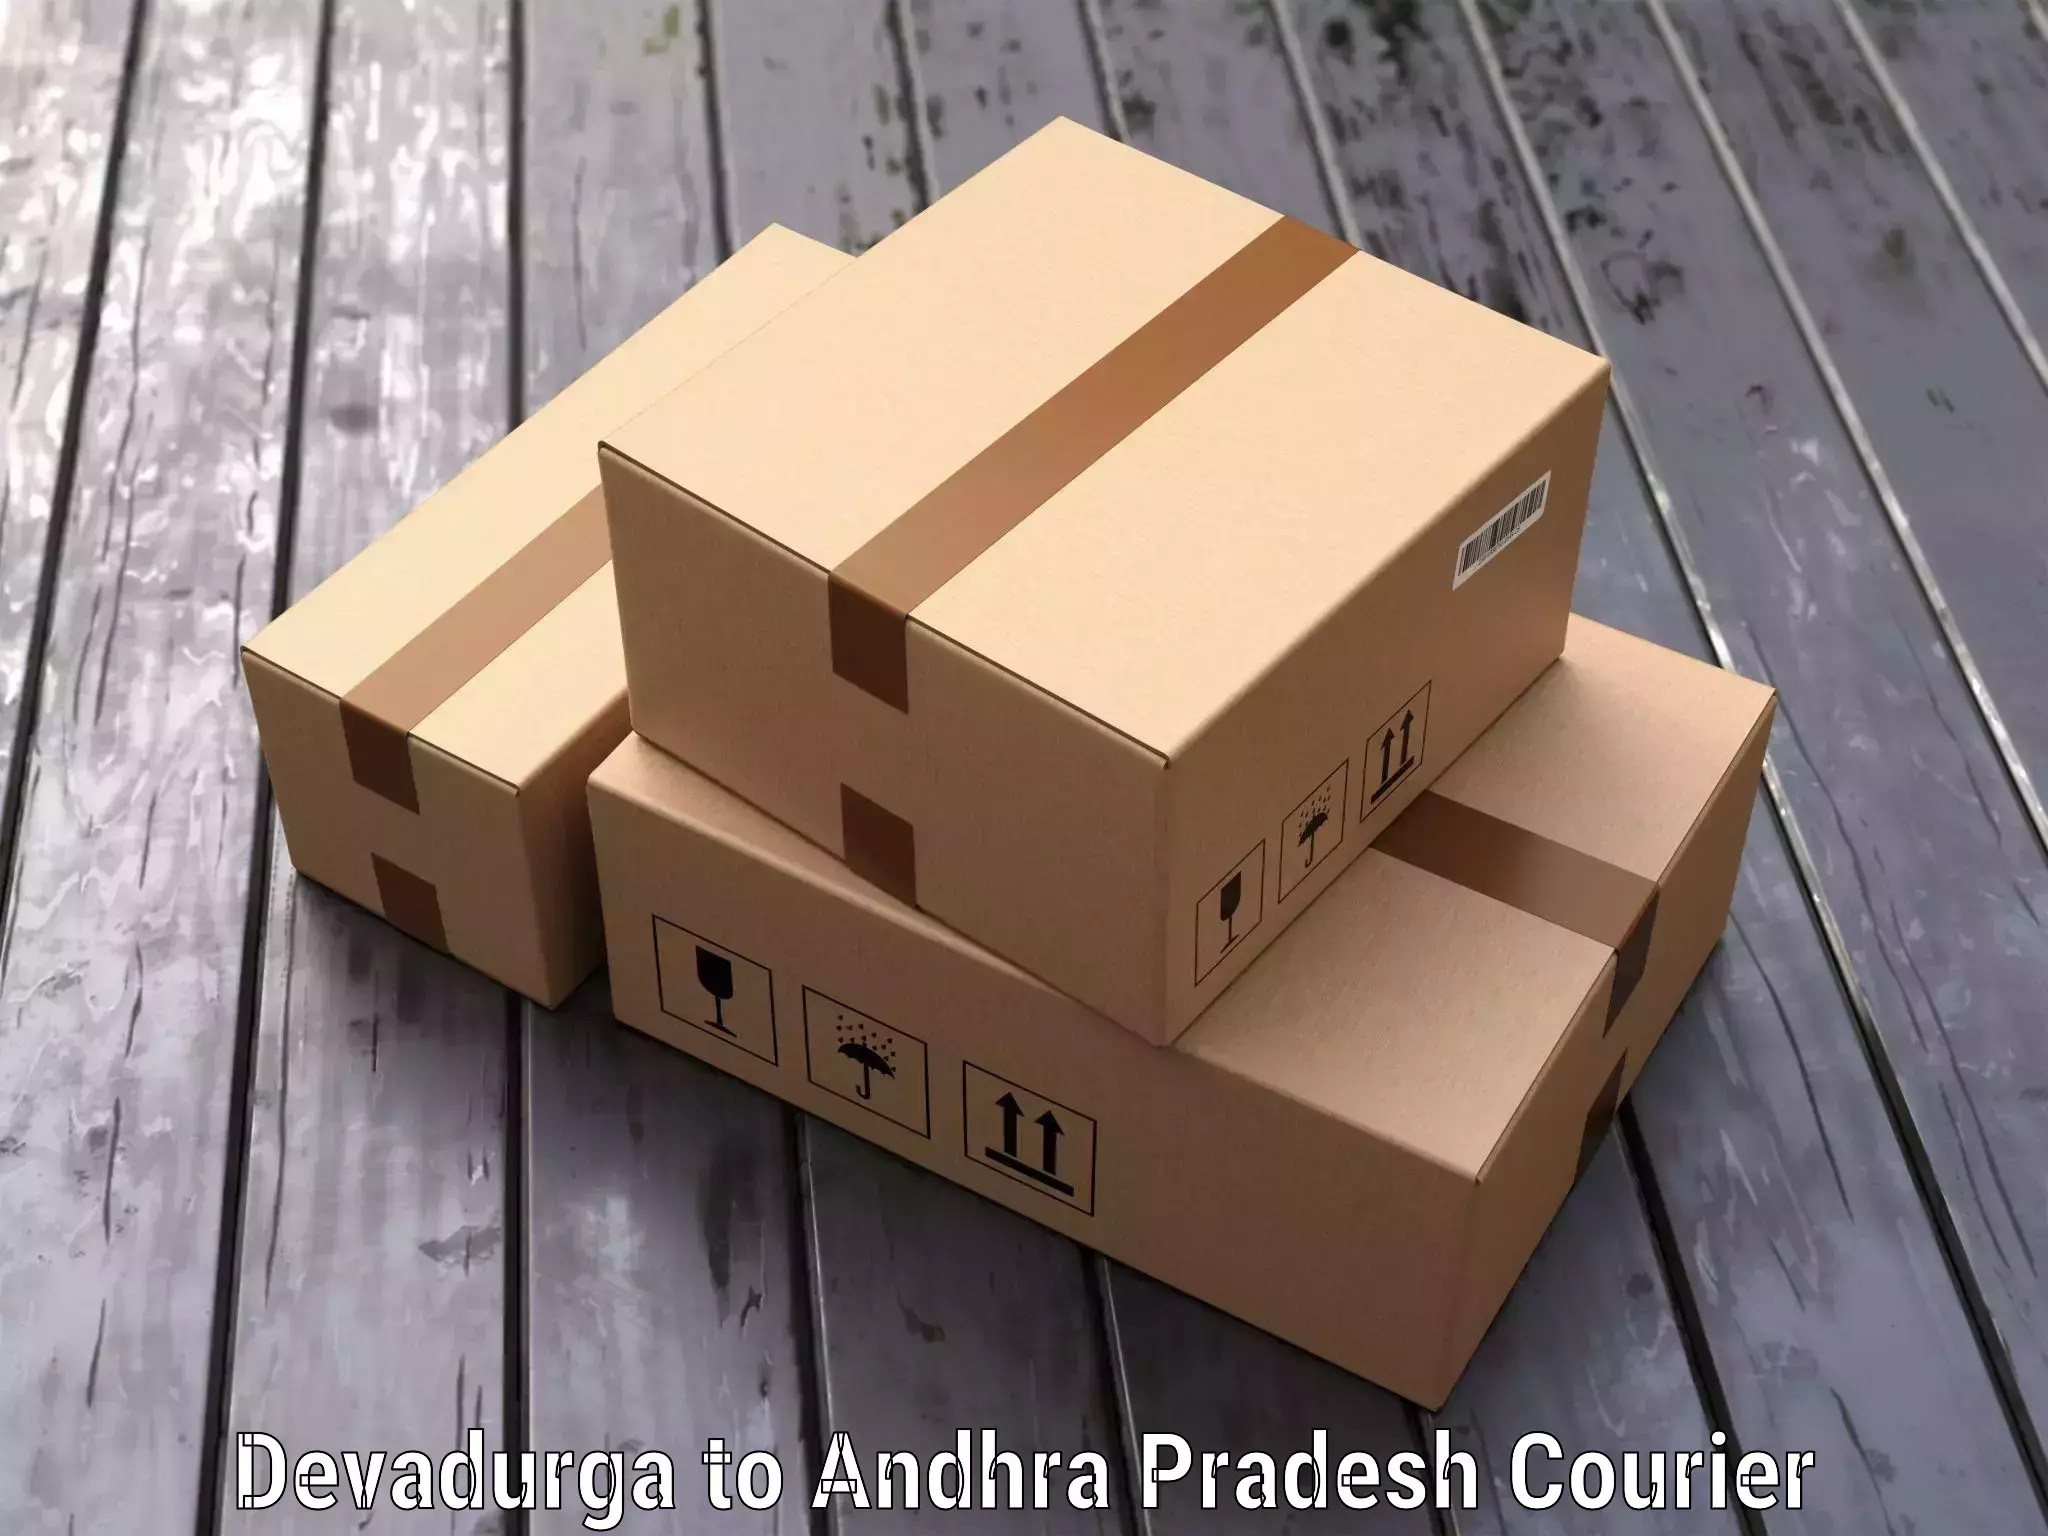 Express luggage delivery Devadurga to Andhra Pradesh